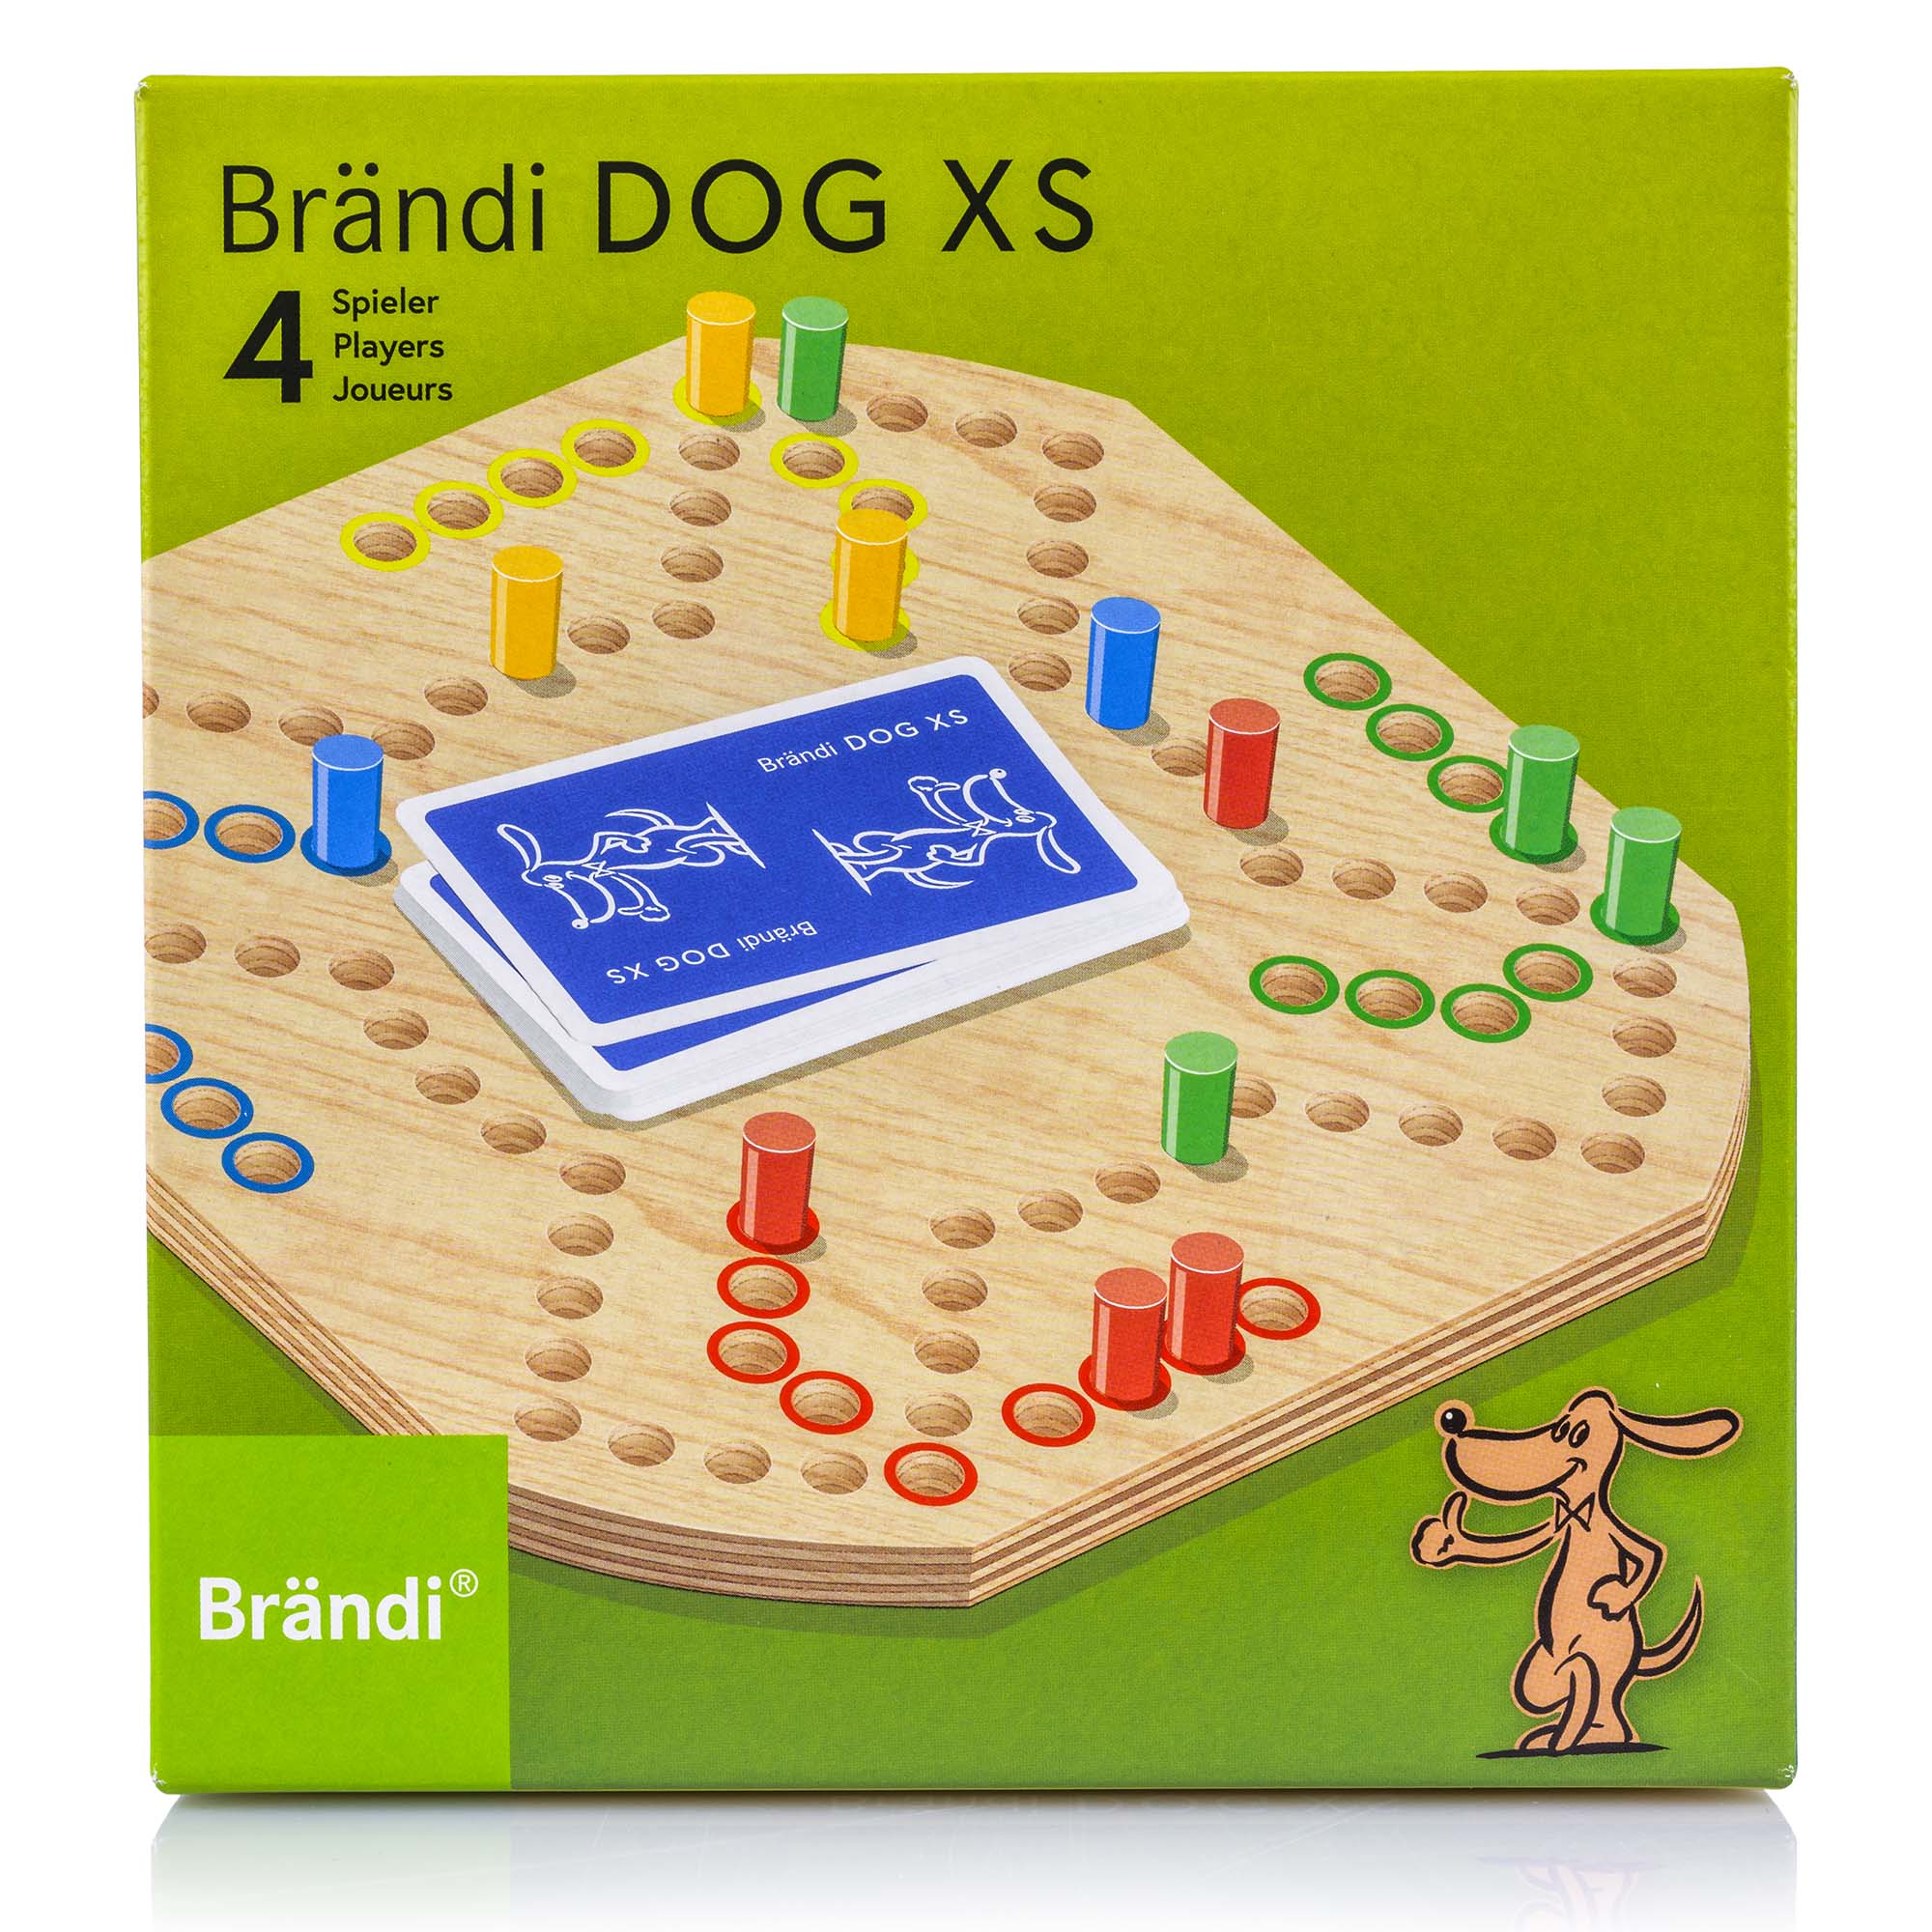 Brändi Dog XS